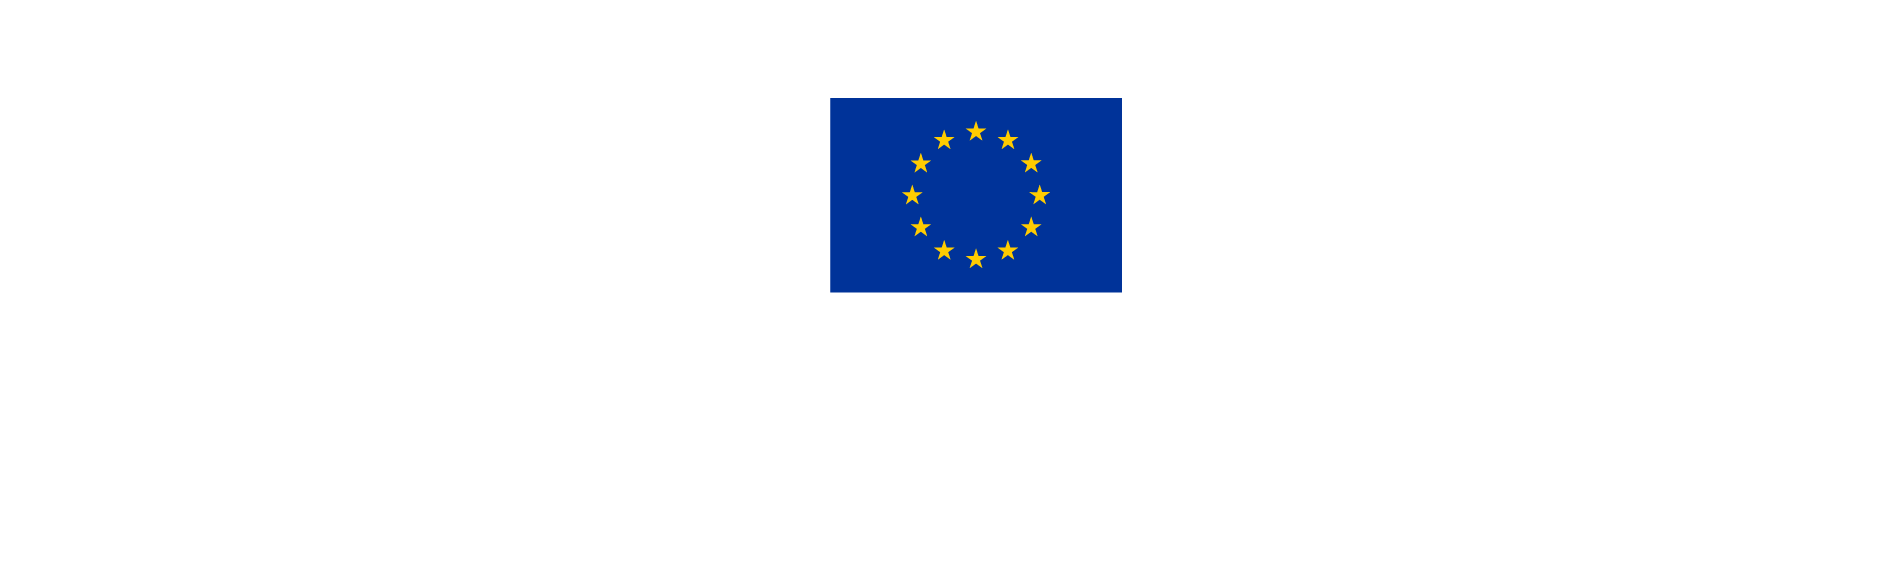 Logo-Interreg-Oberrhein-Rhin-Sup_CMYK_Farbfassung-auf-Transparent-fur-hellen-Hintergrund.png